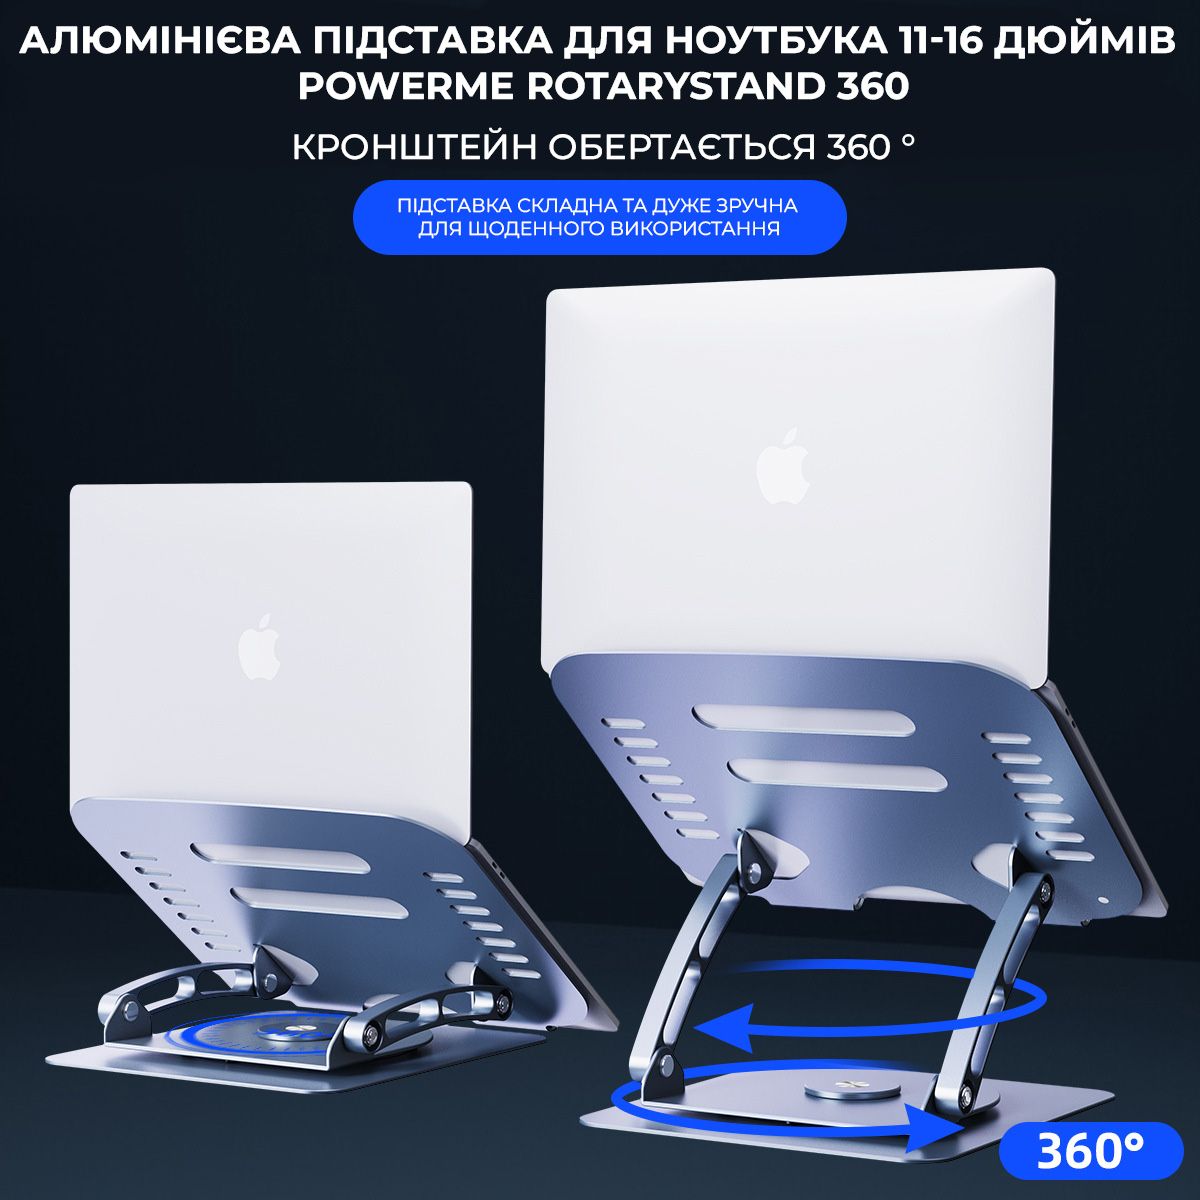 Алюминиевая вращающаяся подставка для ноутбука 11 - 16 дюймов PowerMe RotaryStand 360